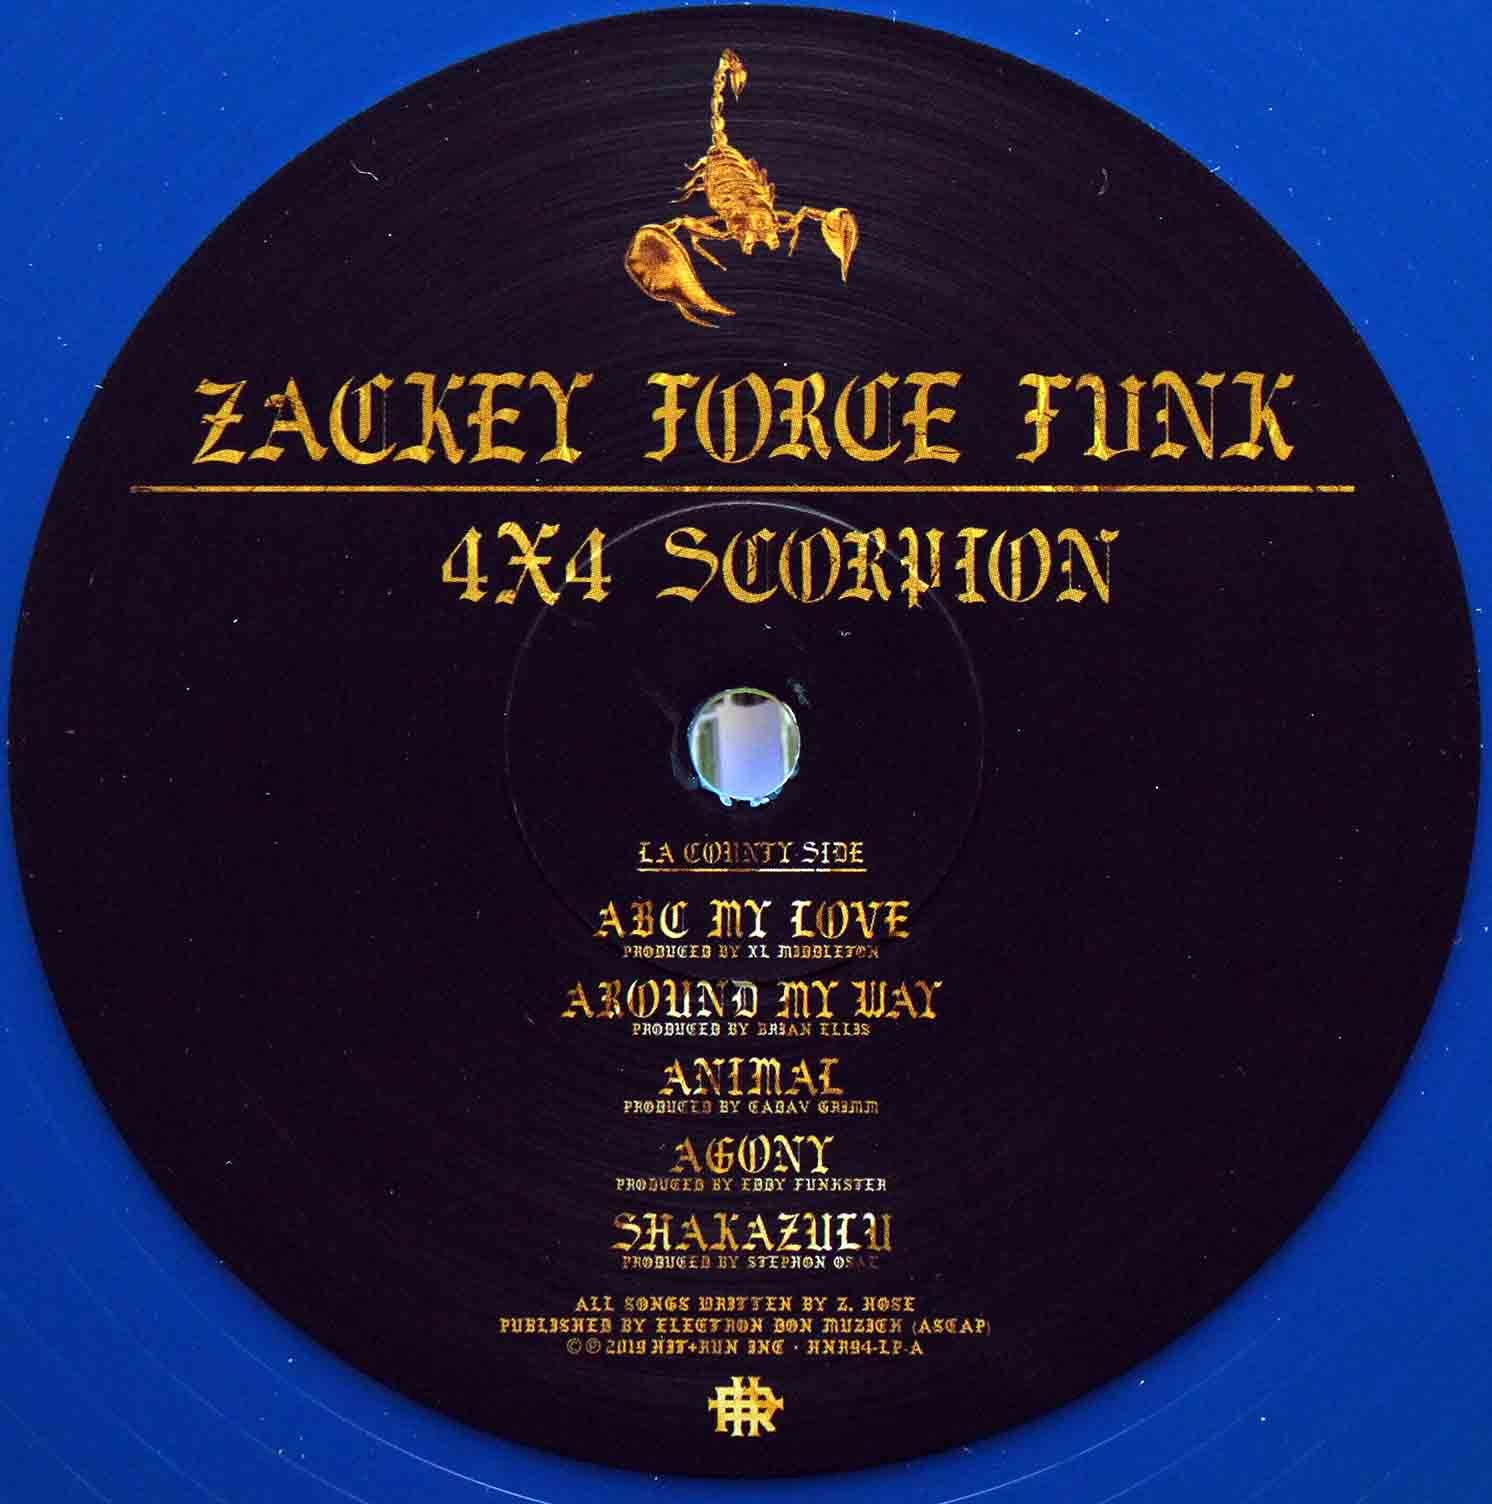 Zackey Force Funk - 4x4 Scorpion 03